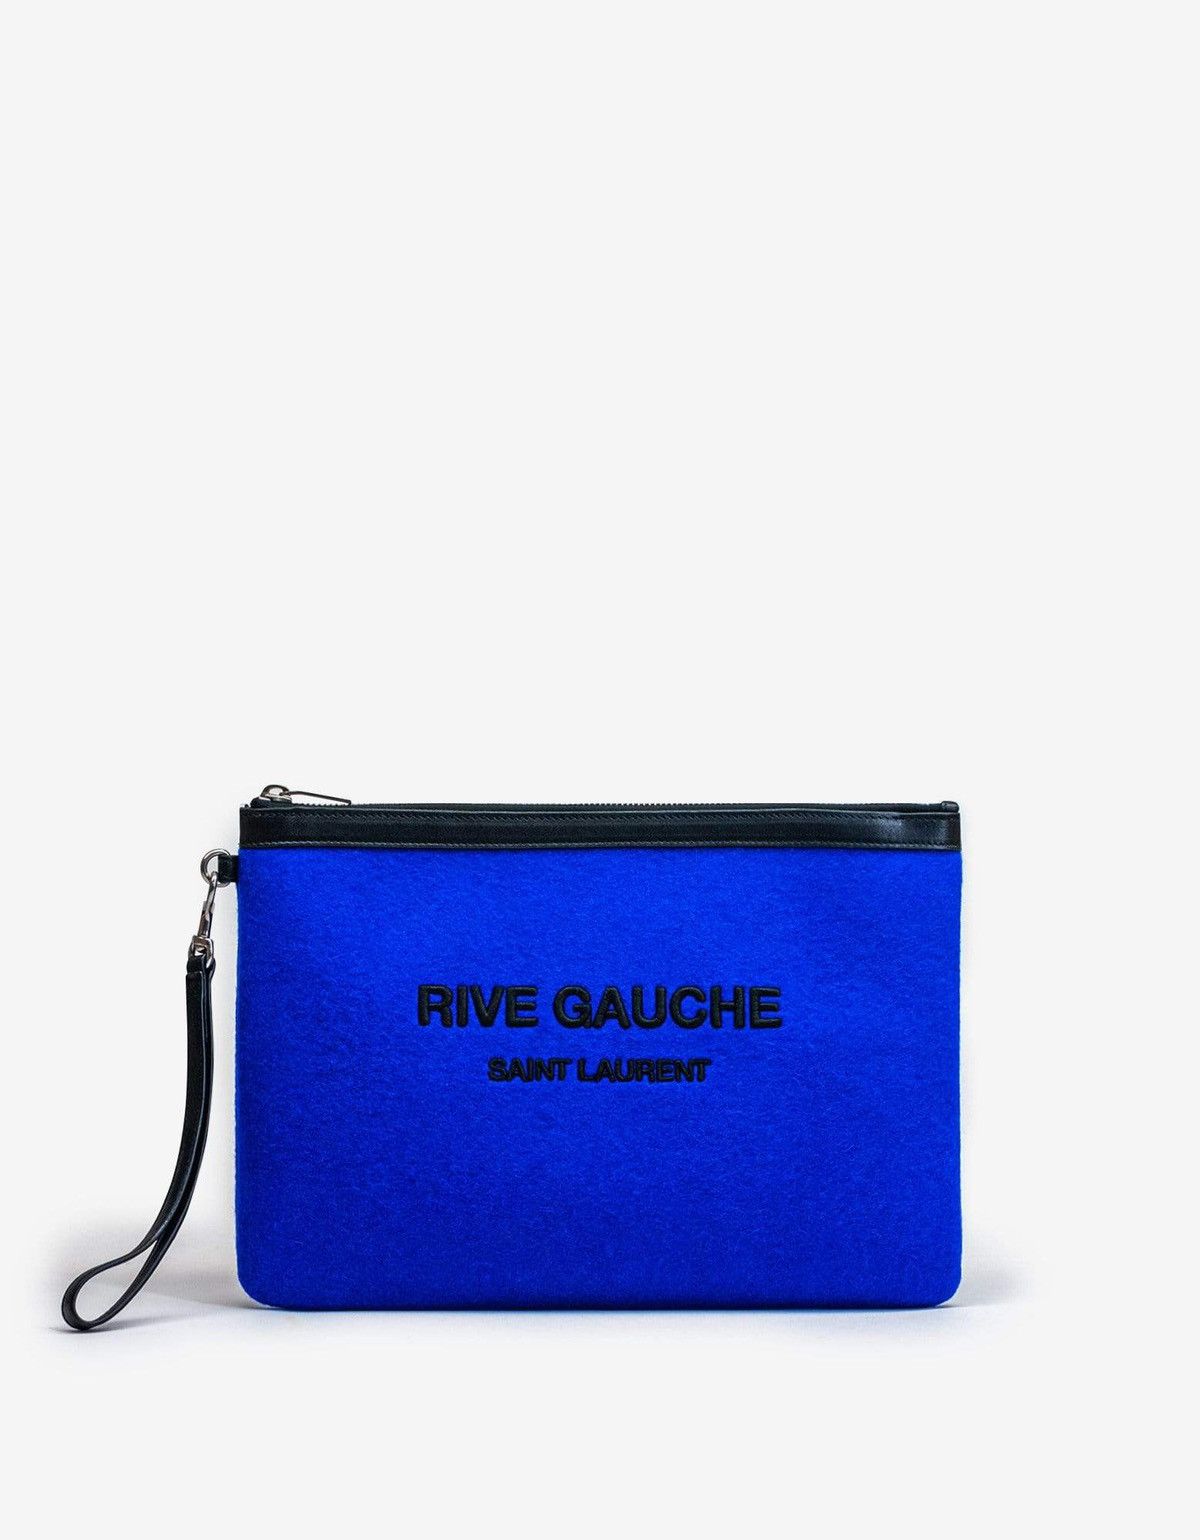 Saint Laurent Paris Blue Wool Felt Rive Gauche Zip Pouch Size ONE SIZE - 1 Preview